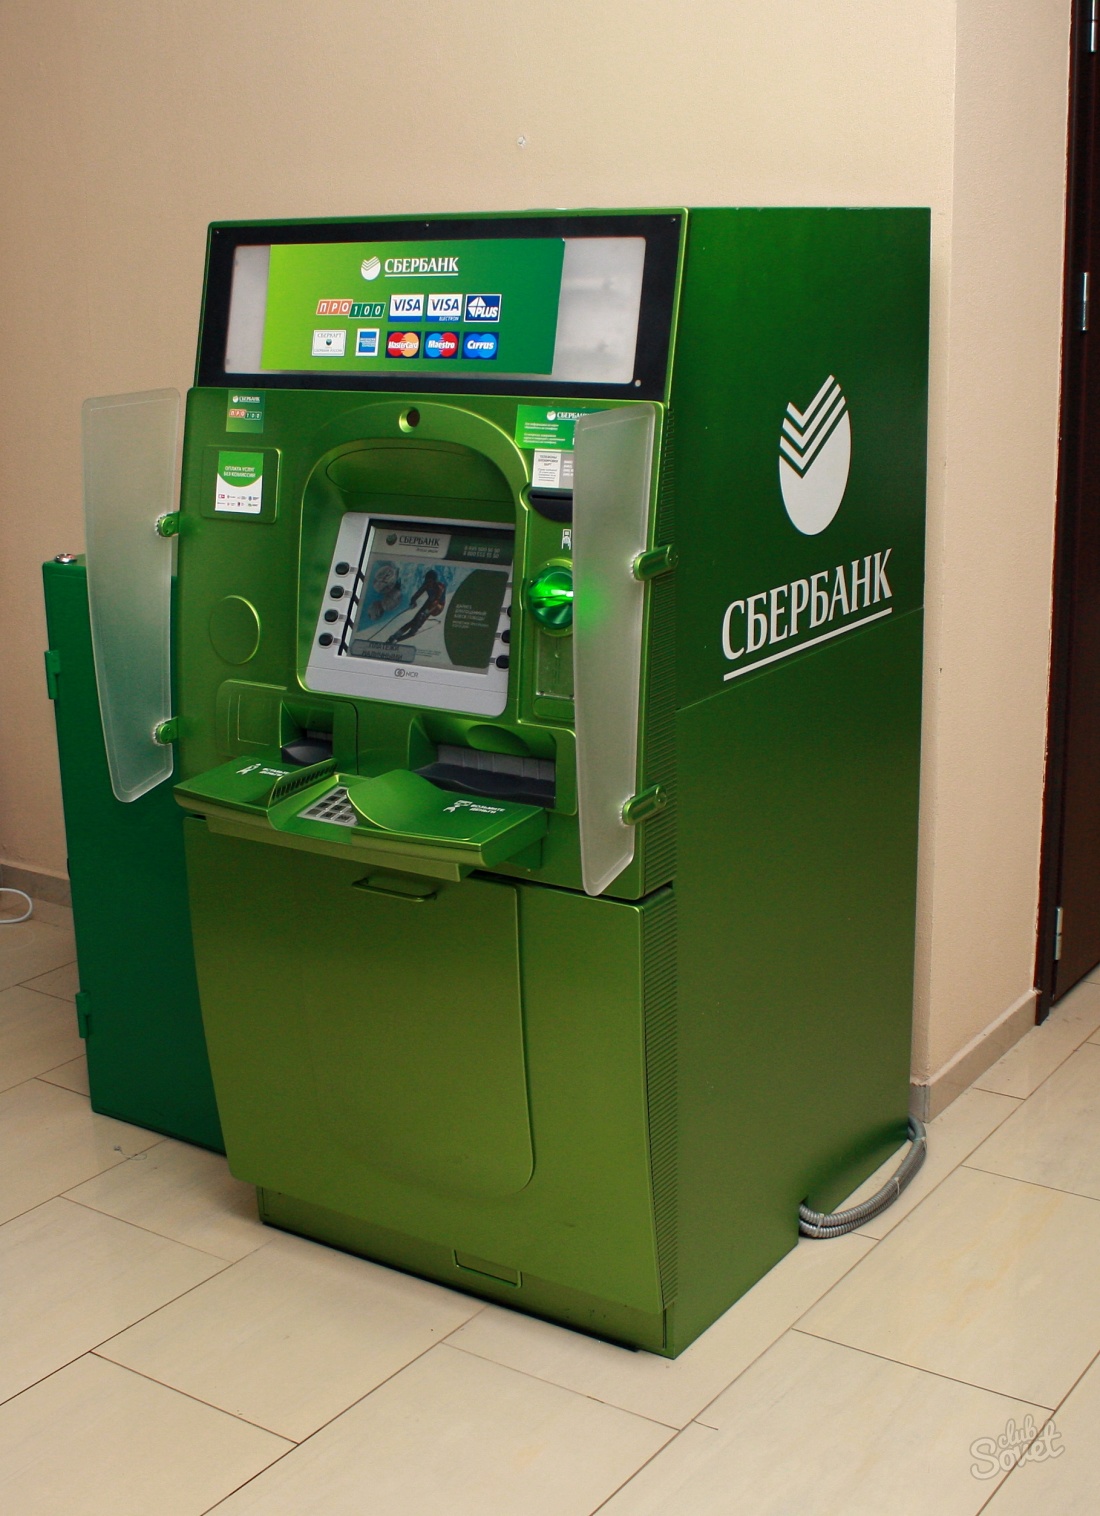 Comment payer par le terminal Sberbank